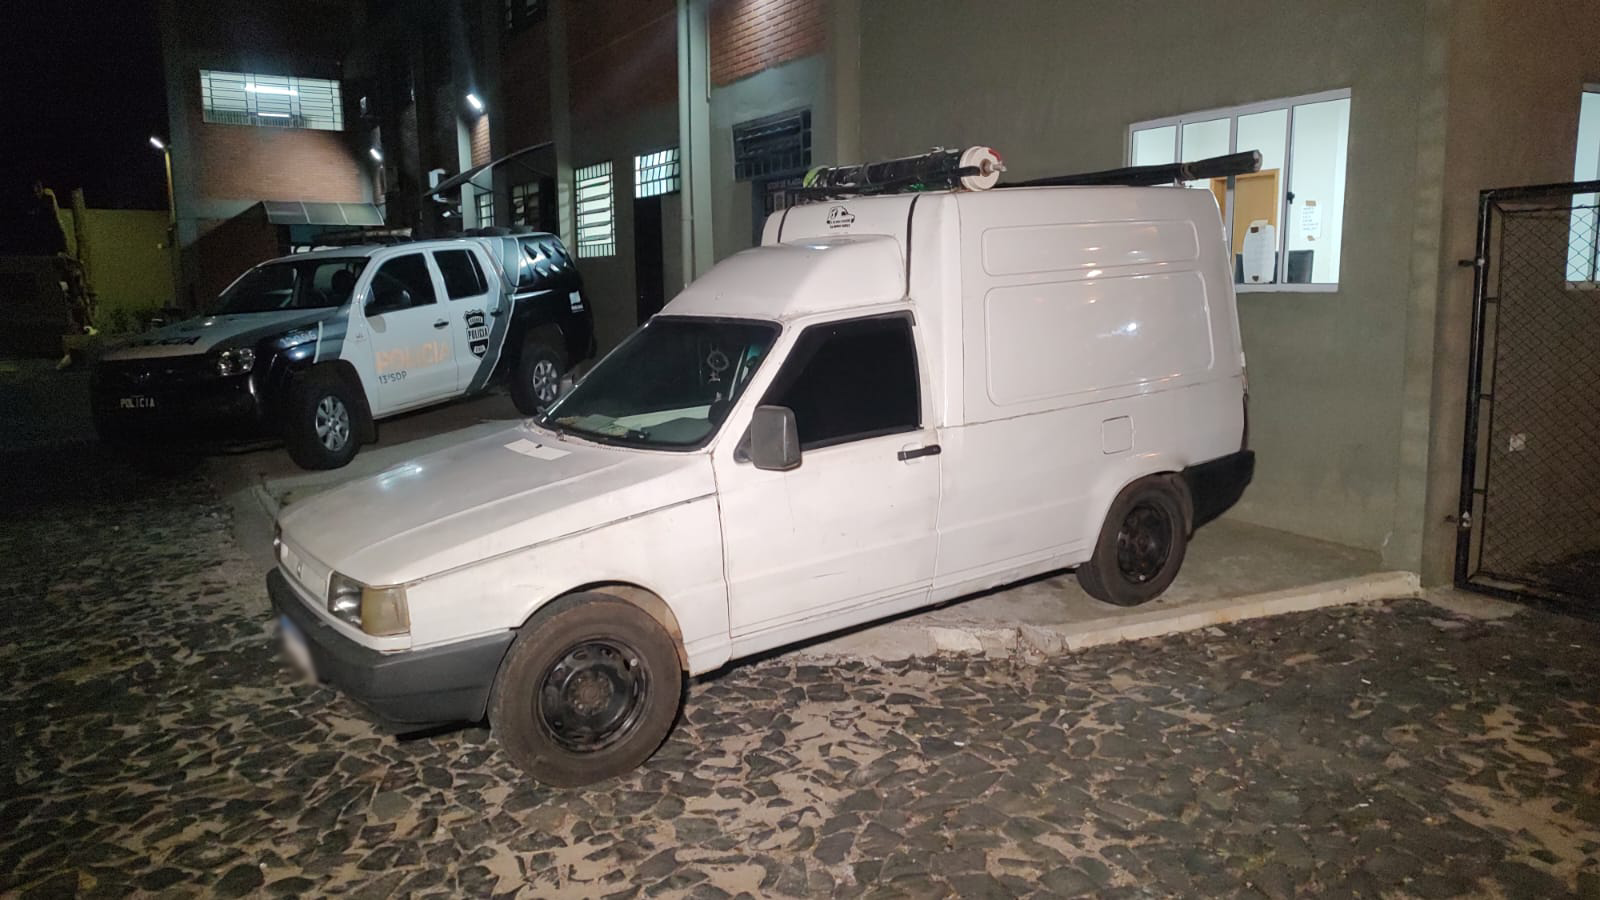 Veículo Fiat Fiorino foi encaminhado à 13ª Subdivisão Policial de Ponta Grossa